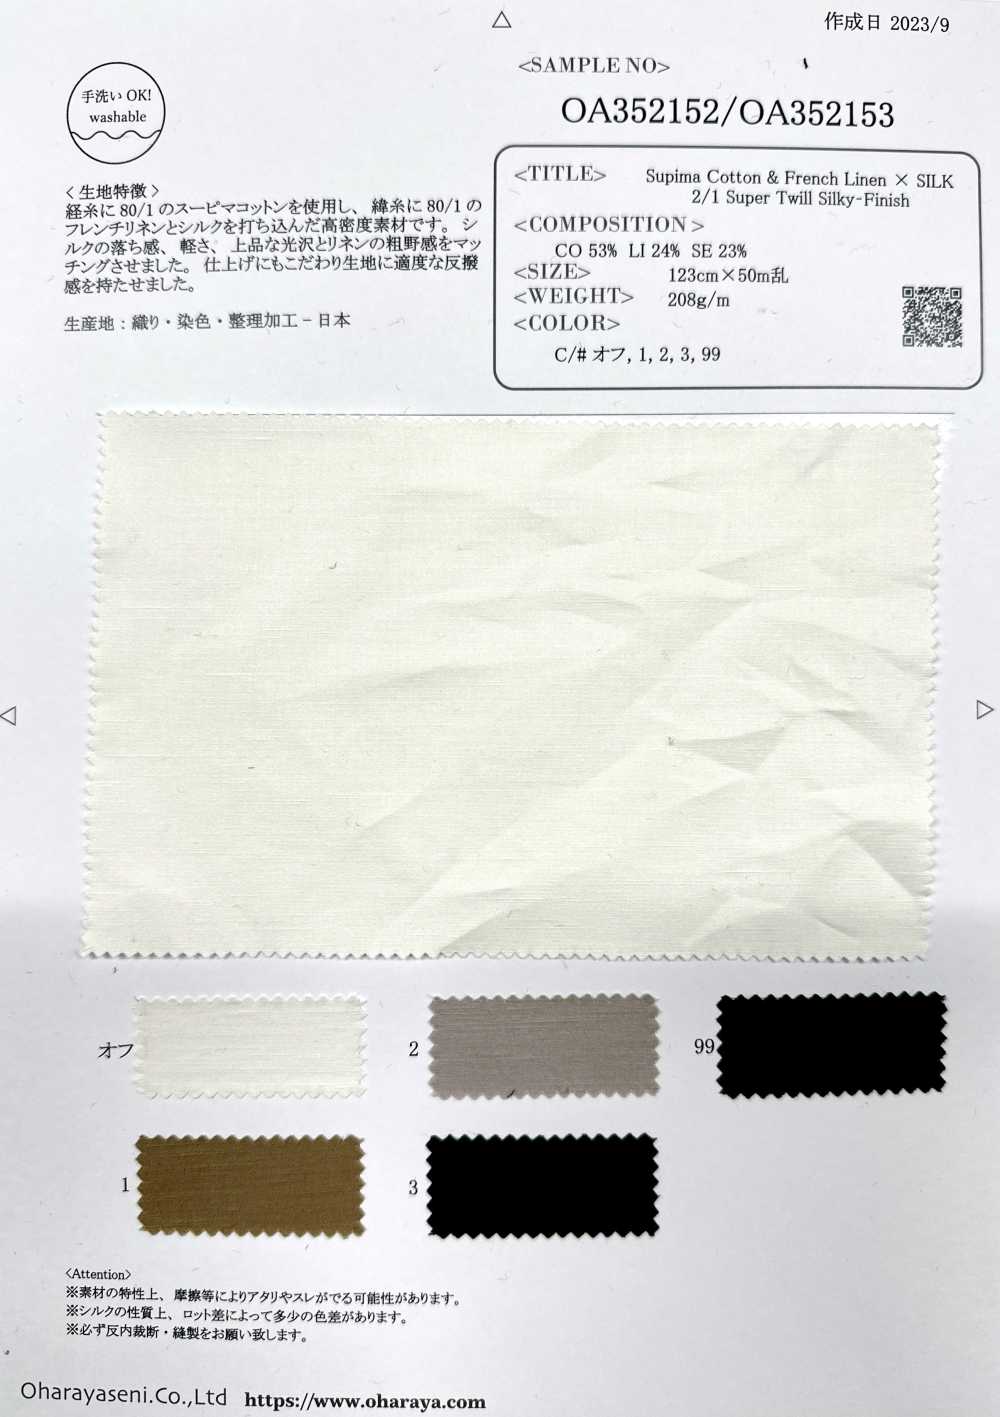 OA352152 苏比马棉 & 法国亚麻 × SILK 2/1 超级斜纹丝光饰面[面料] 小原屋繊維